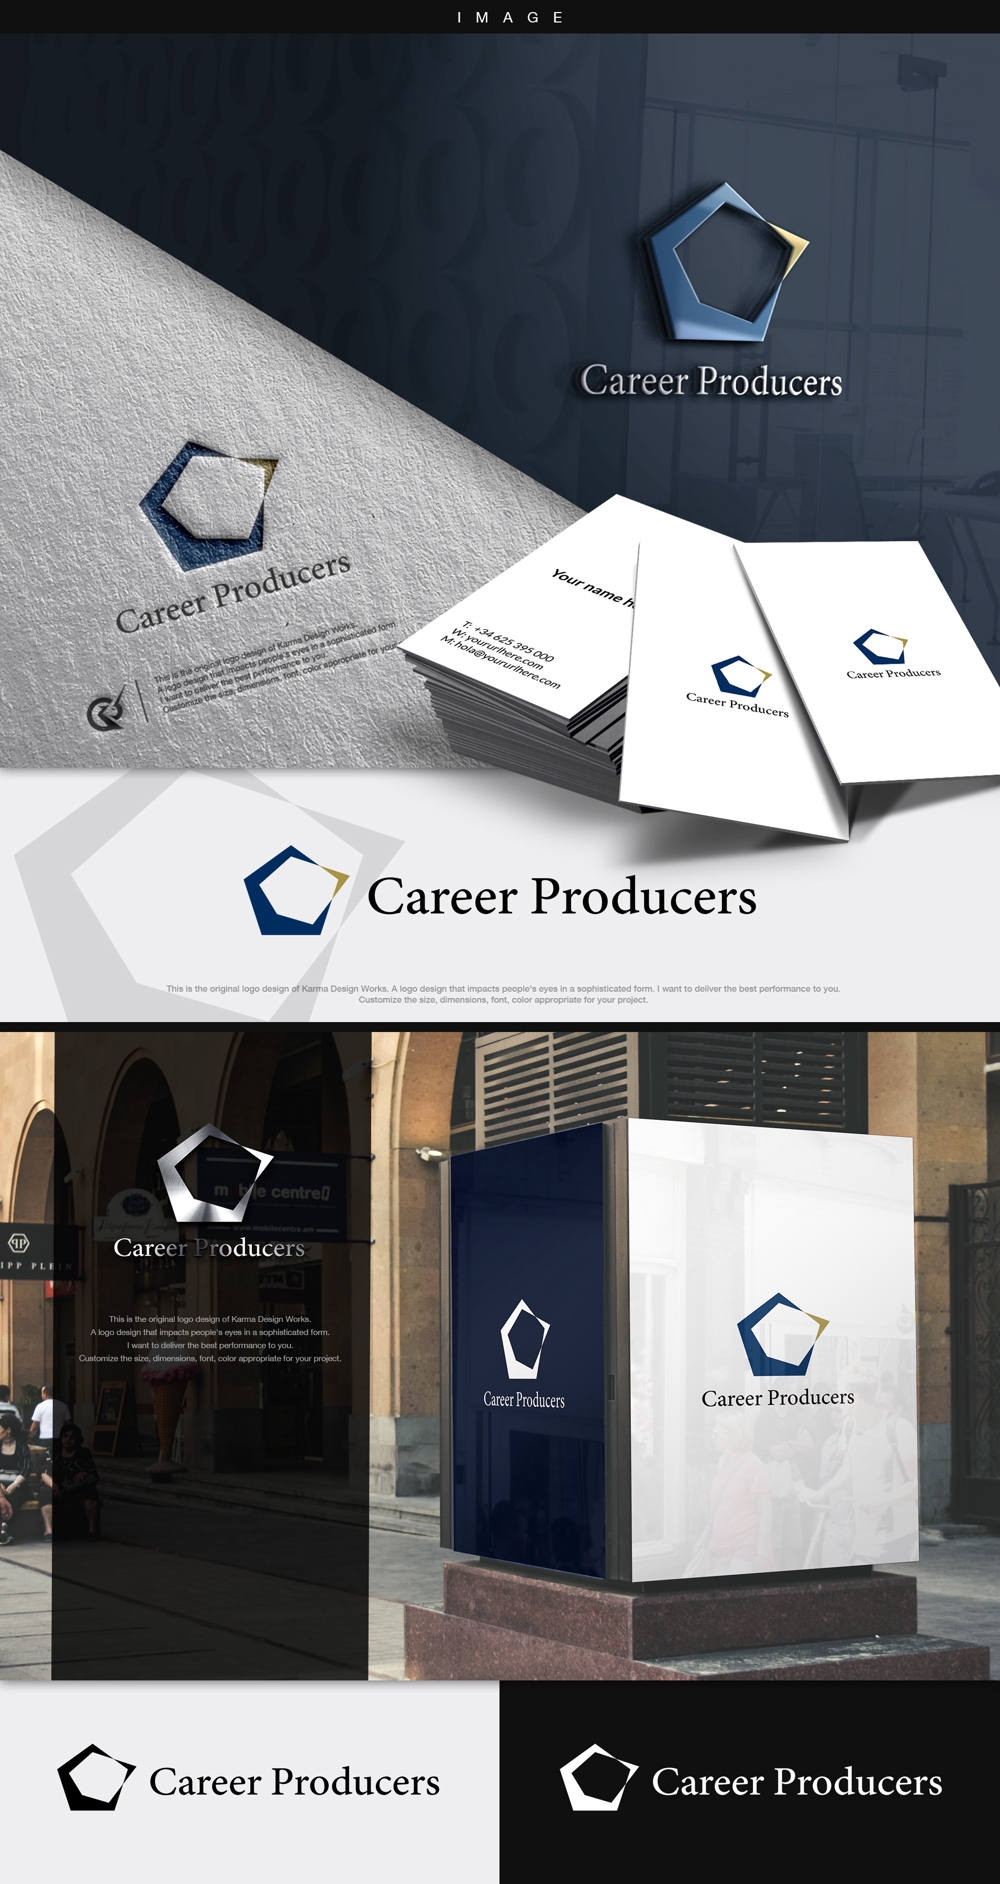 人材紹介の新サービス「Career Producers」のロゴ